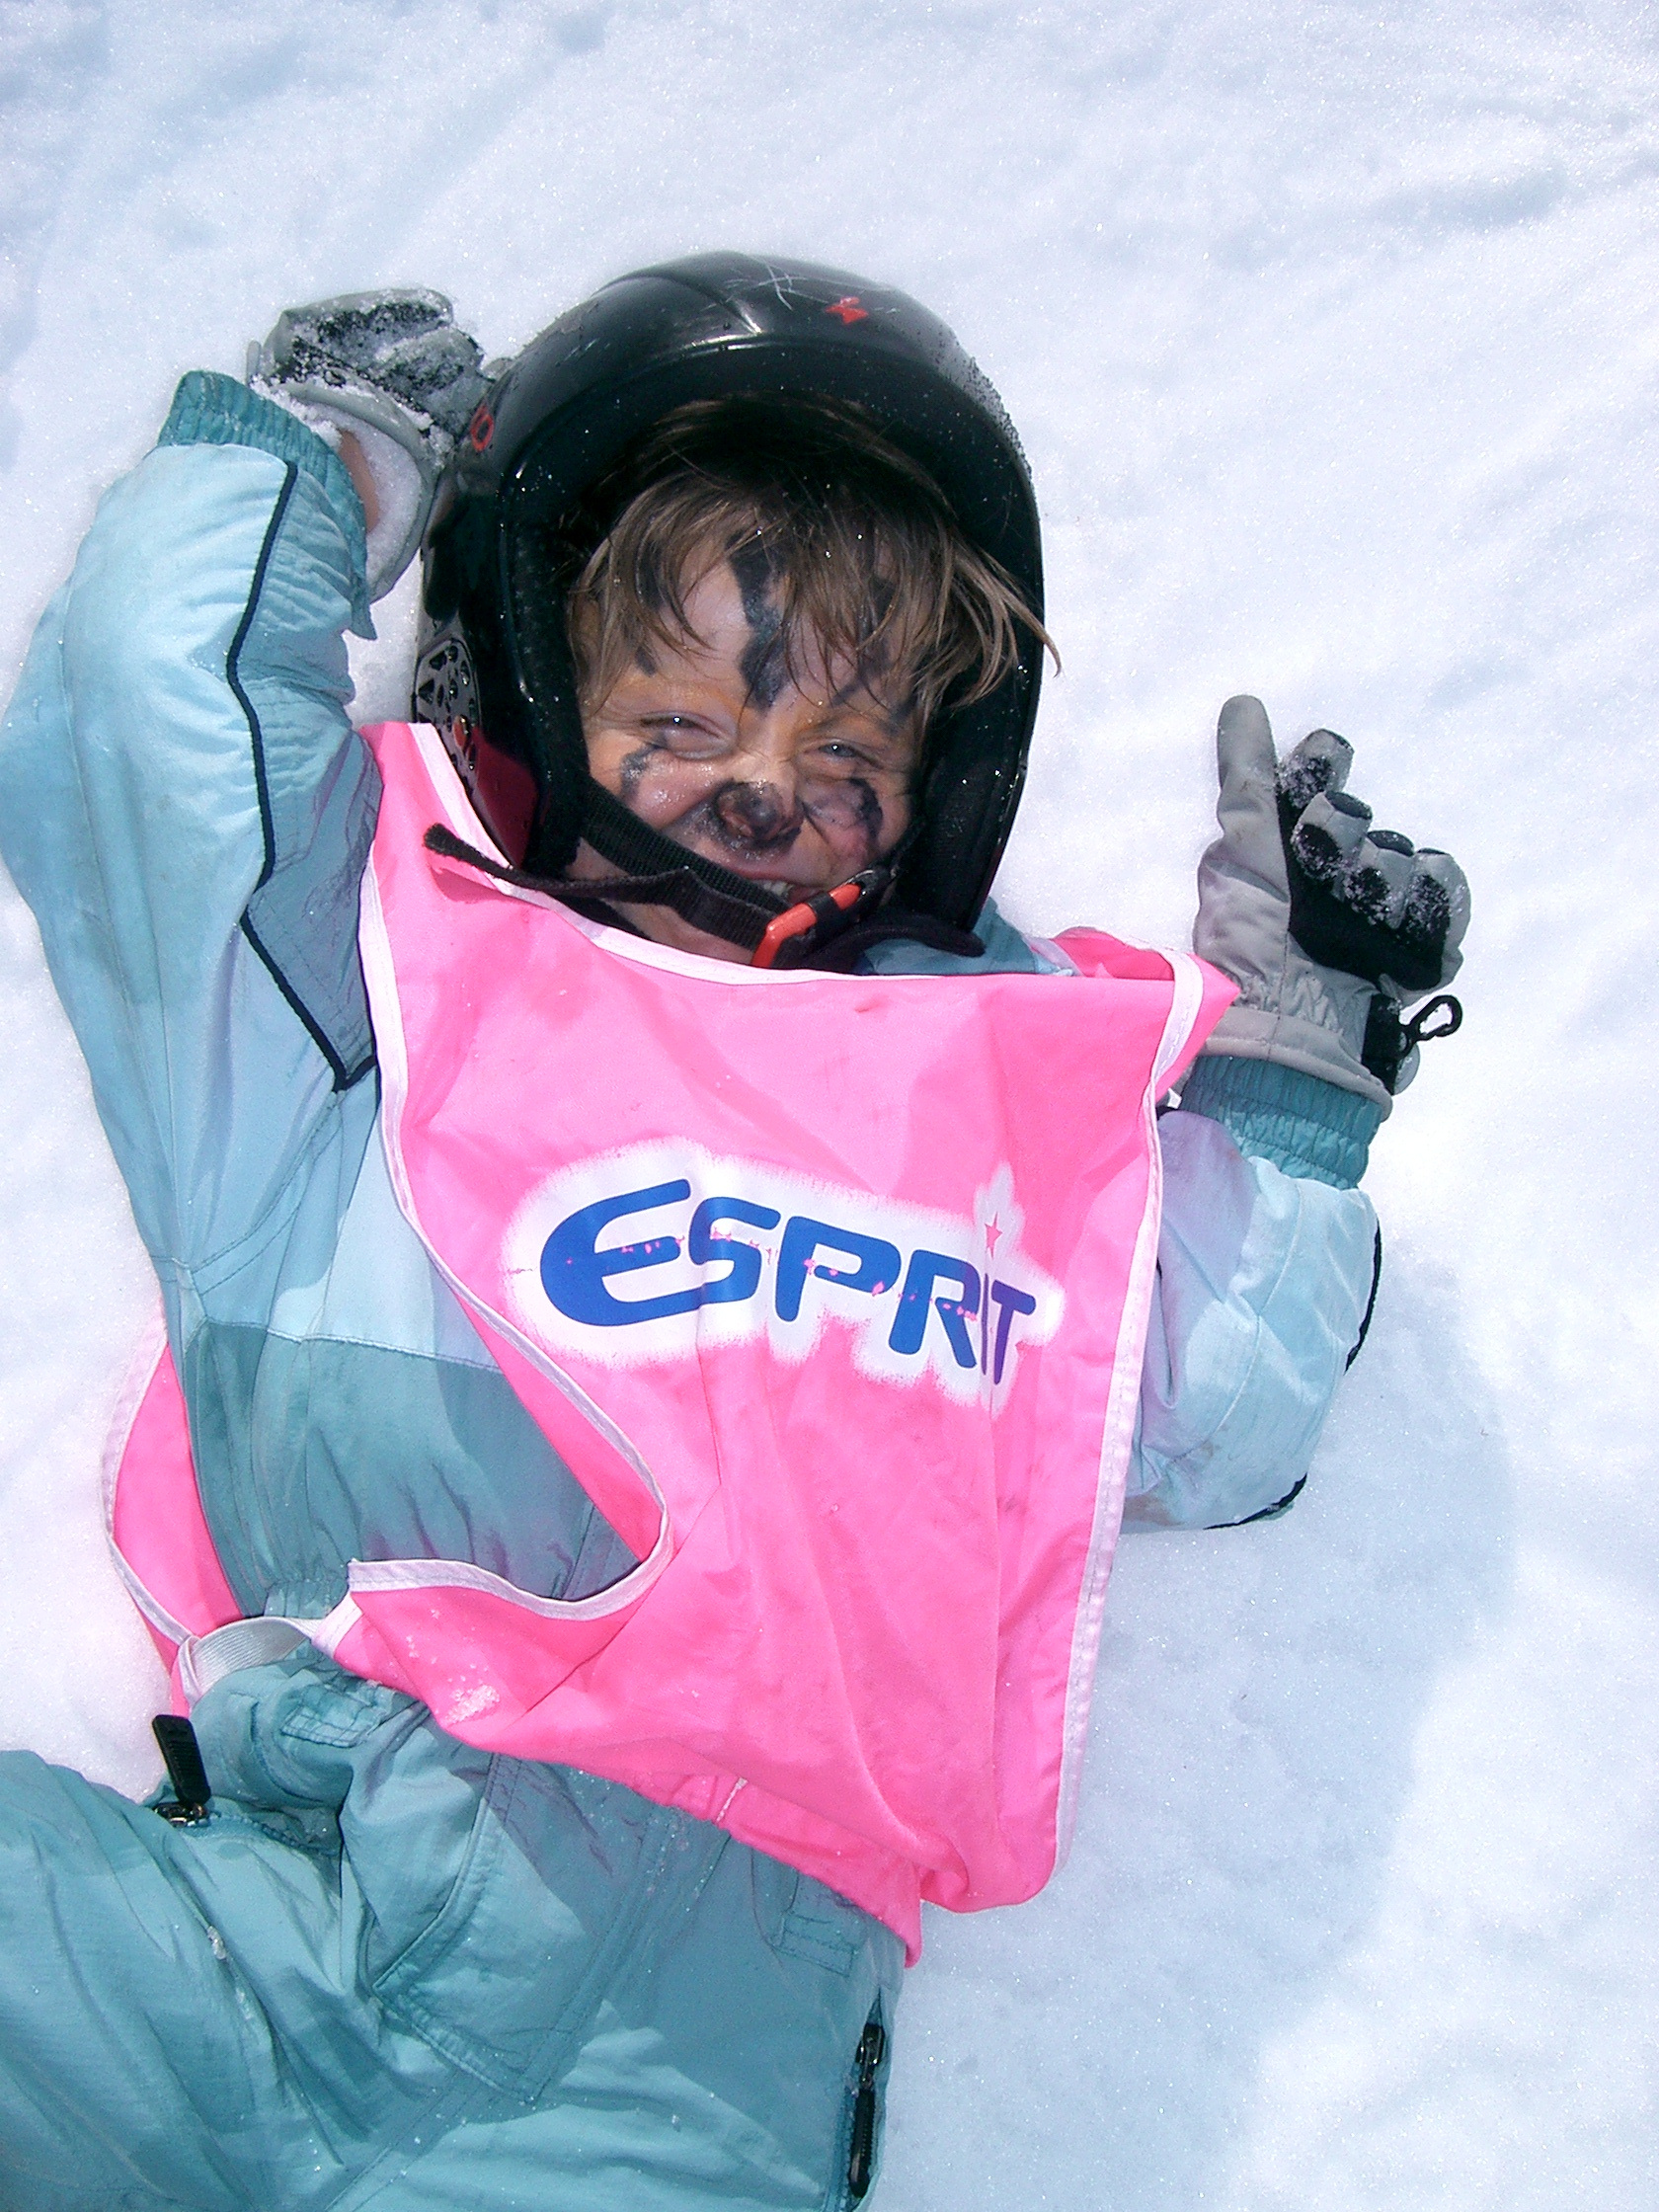 Esprit Ski wins Best Family Ski Tour Operator award